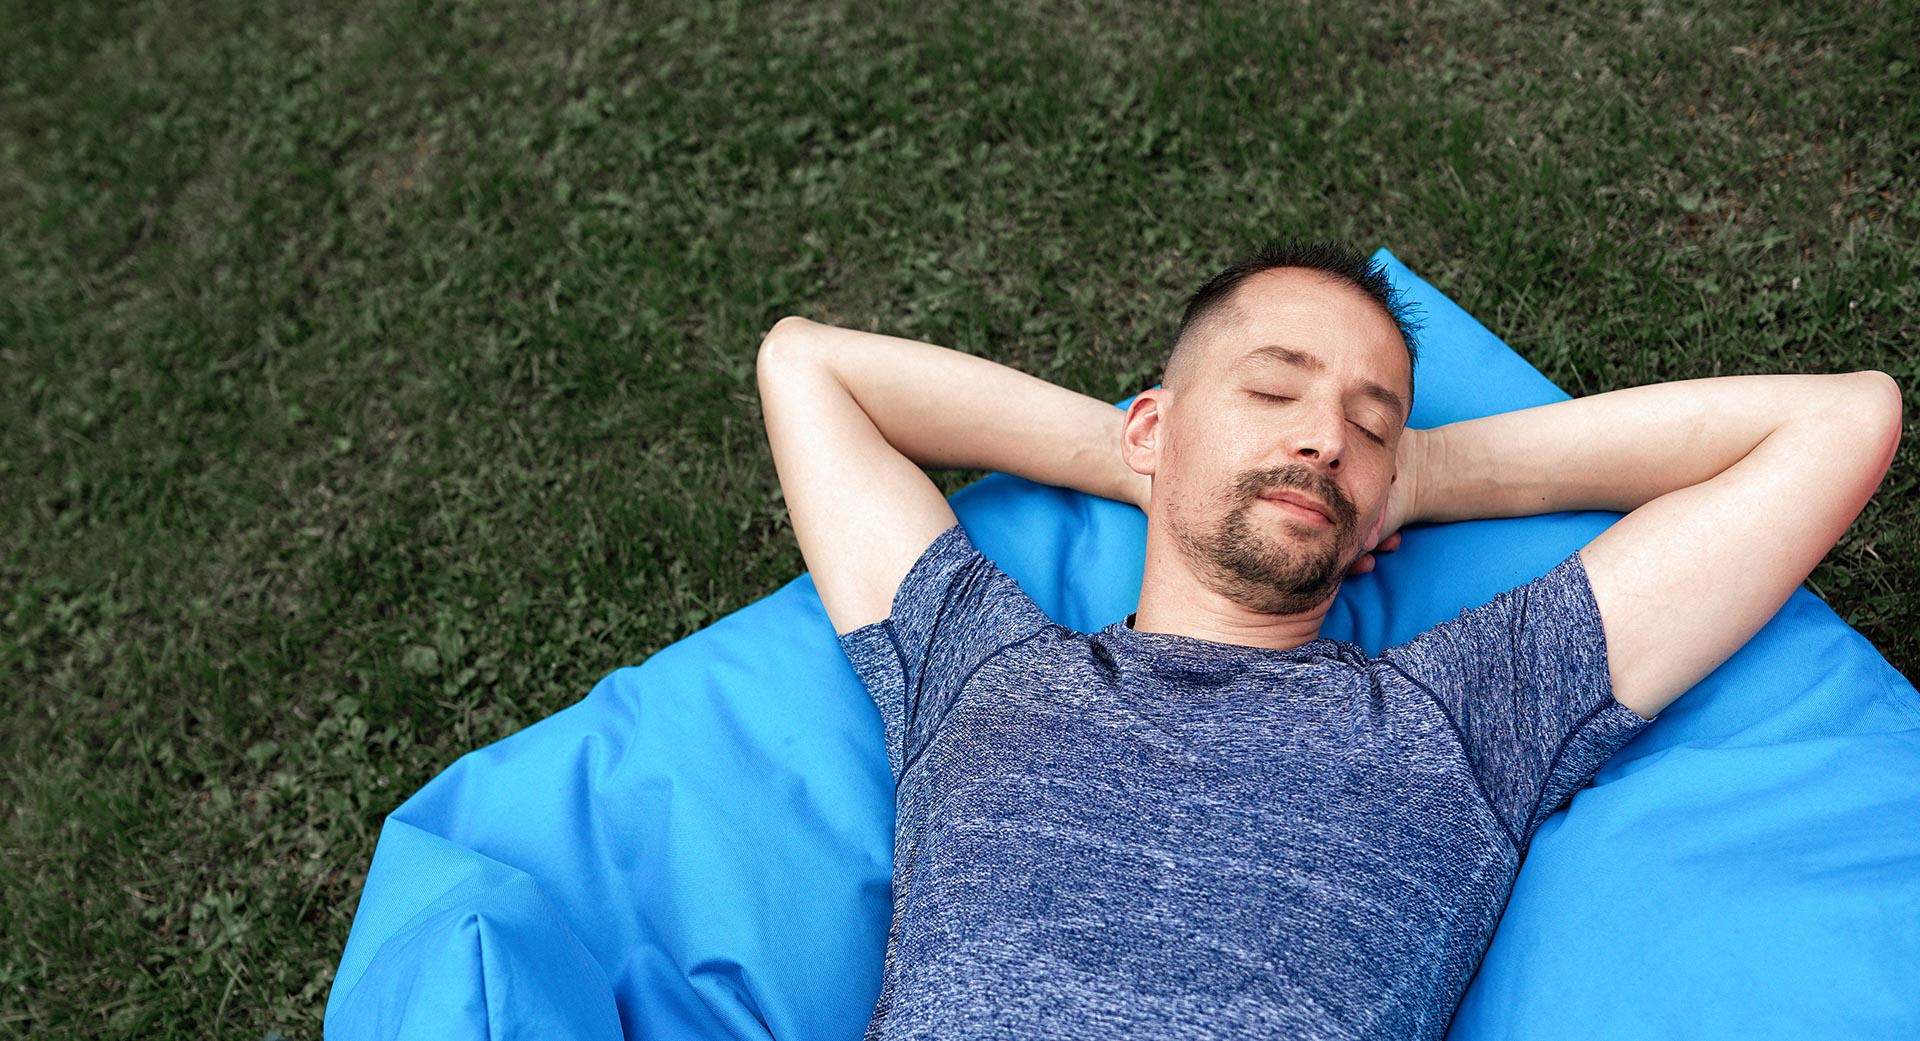 A man sleeping on grass